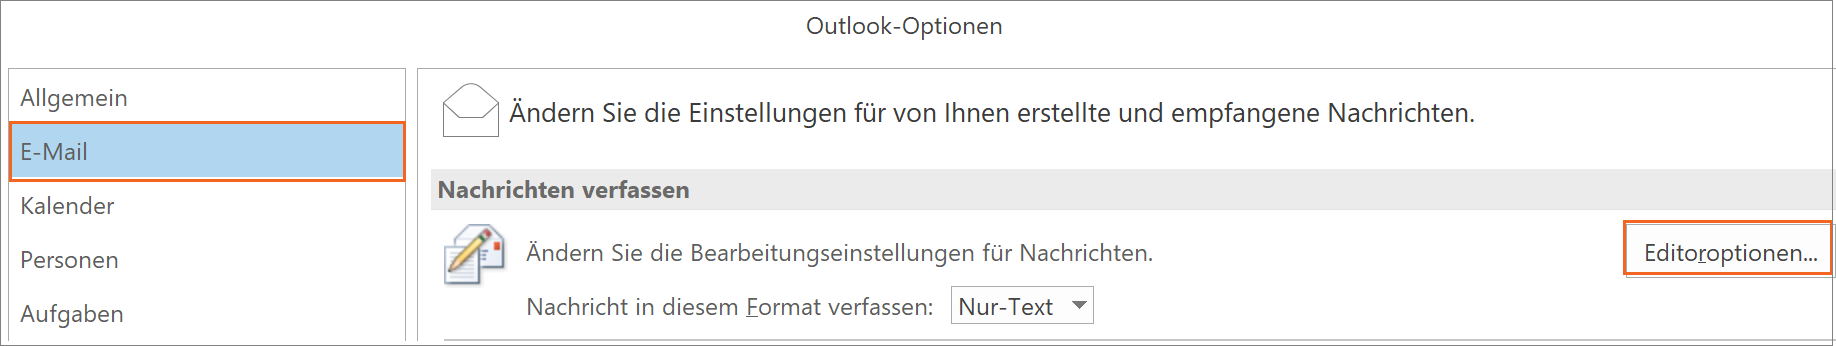 MS Outlook - Editoroptionen in den Optionen einstellen